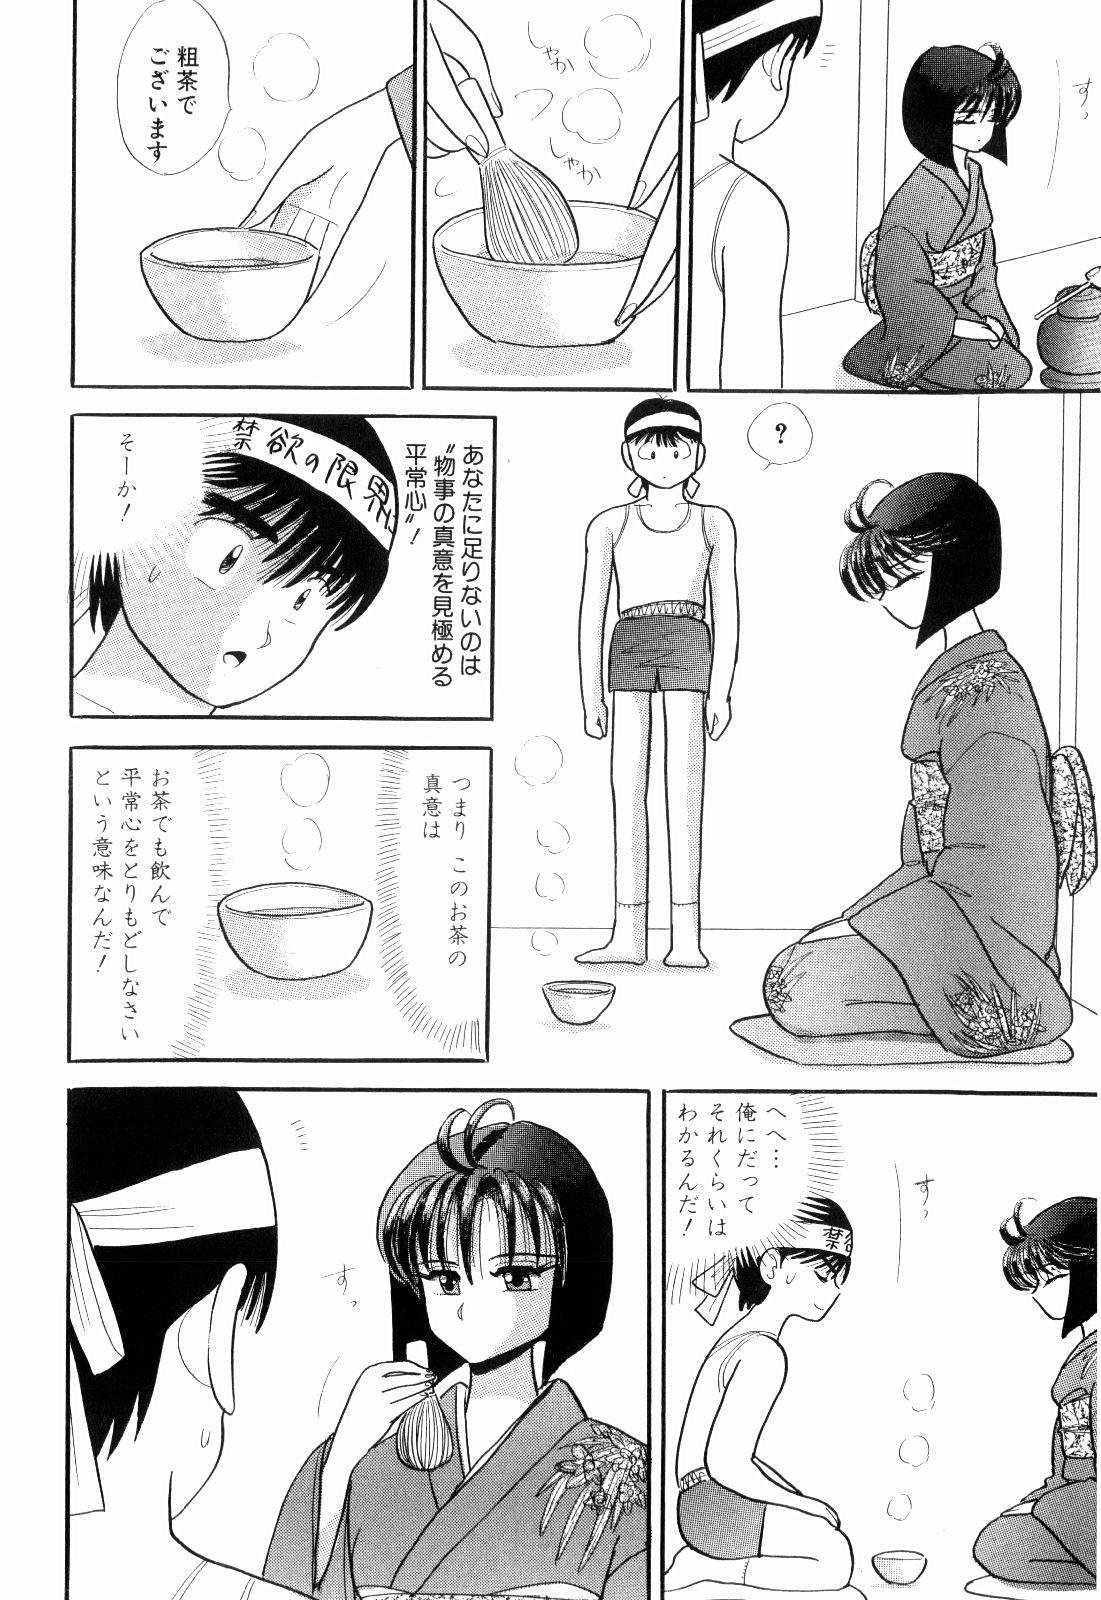 Porno Kenjiro Kakimoto - Futari Kurashi 05 Hd Porn - Page 8